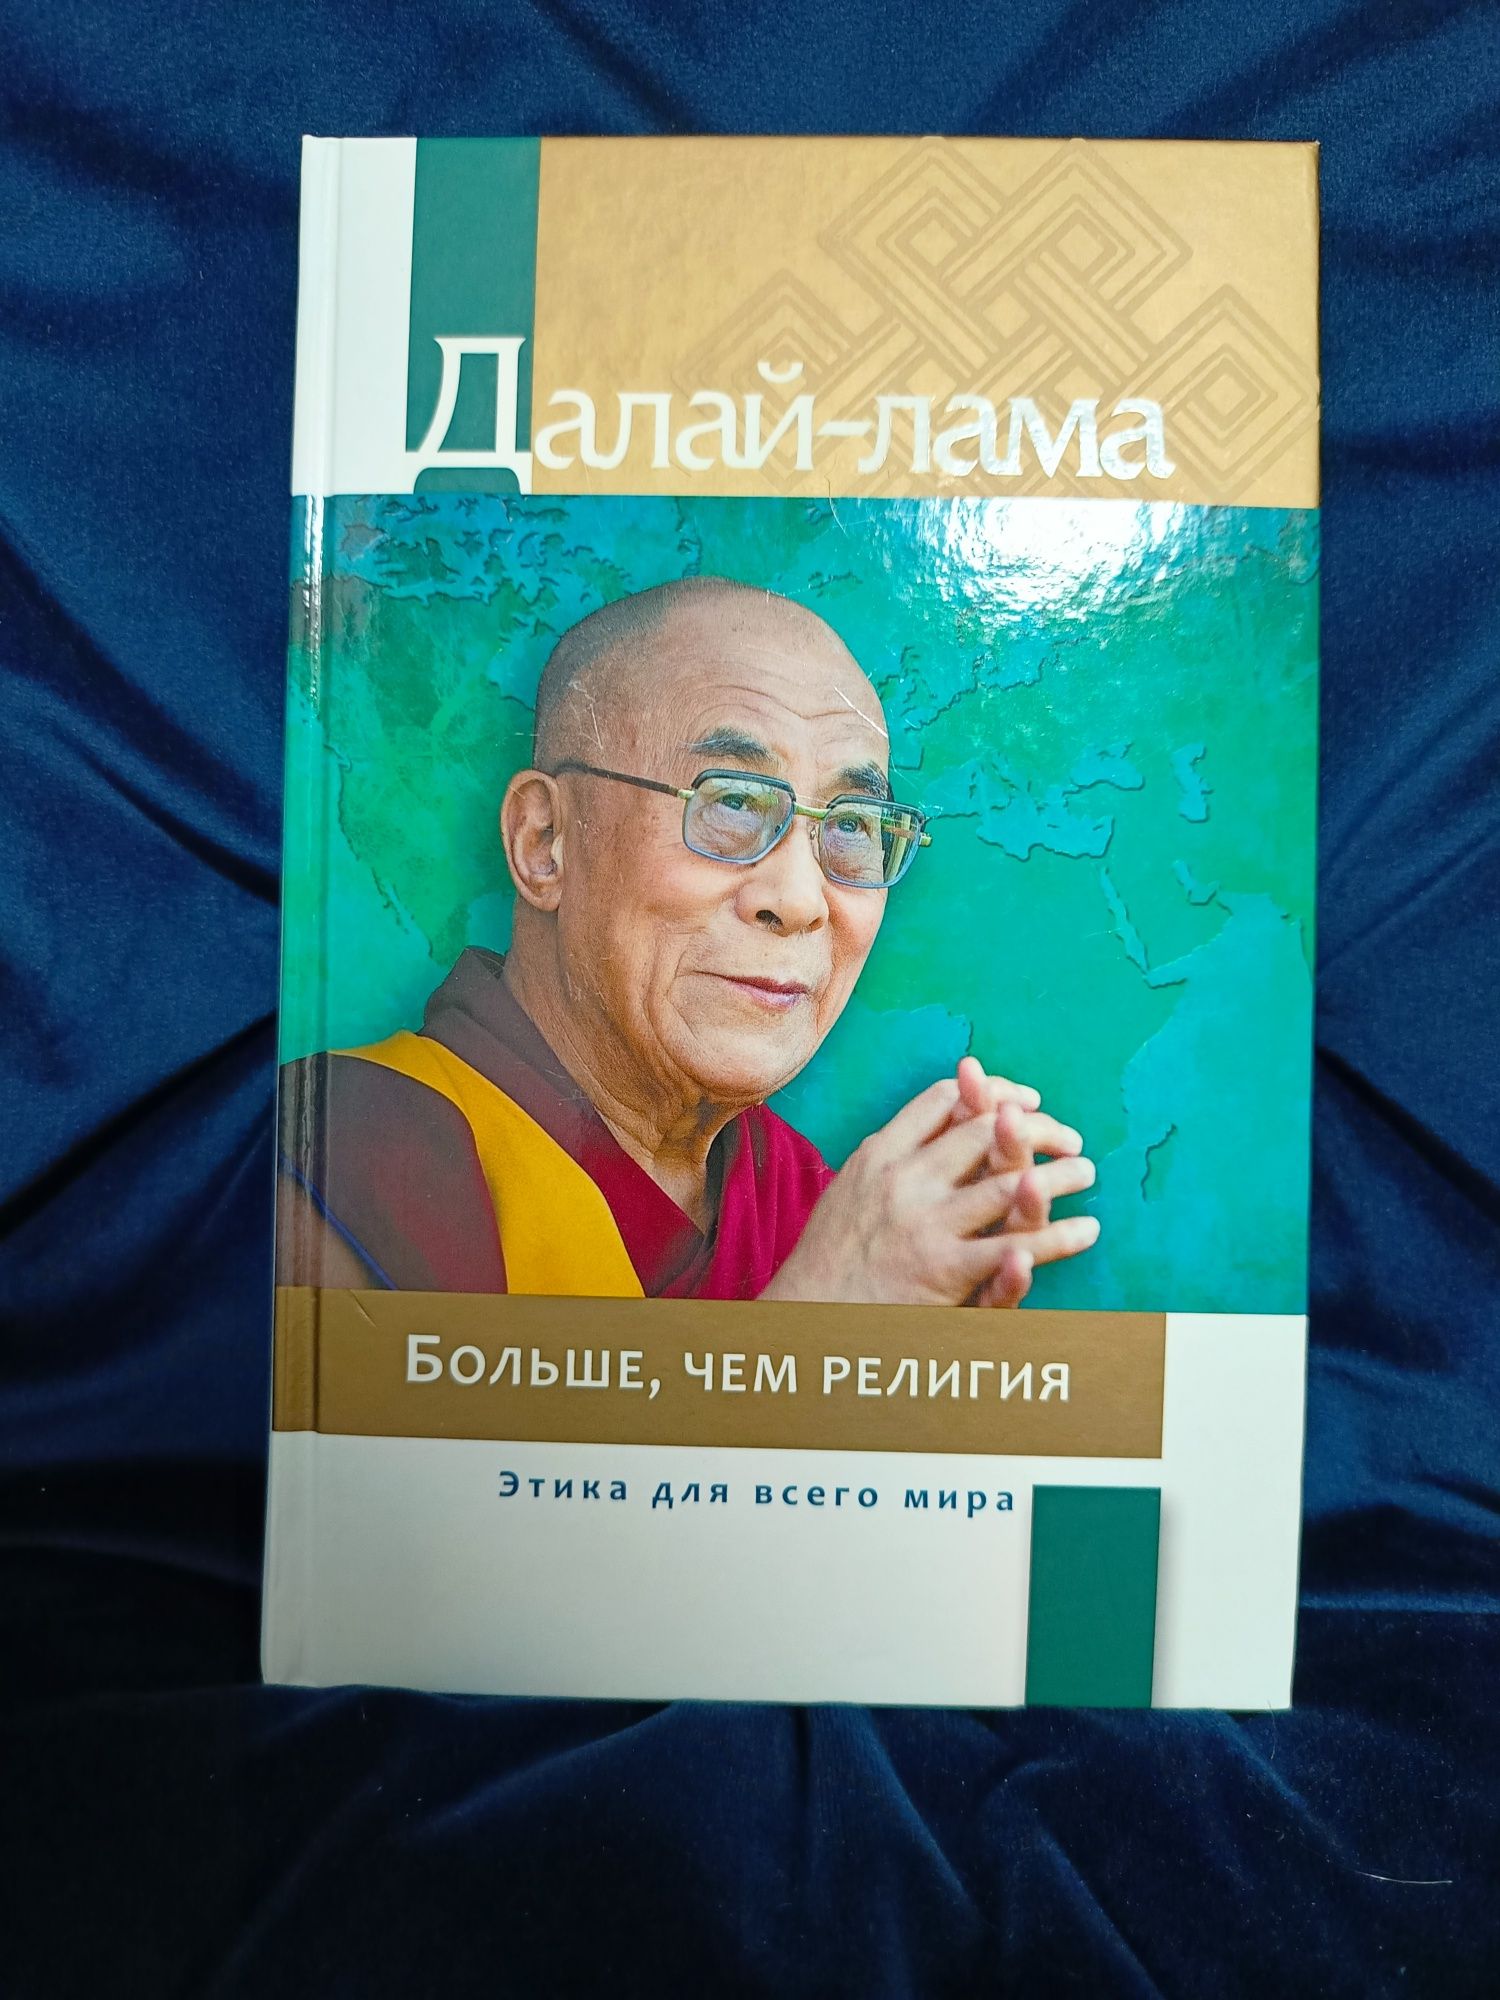 Далай-Лама "Больше, чем религия"